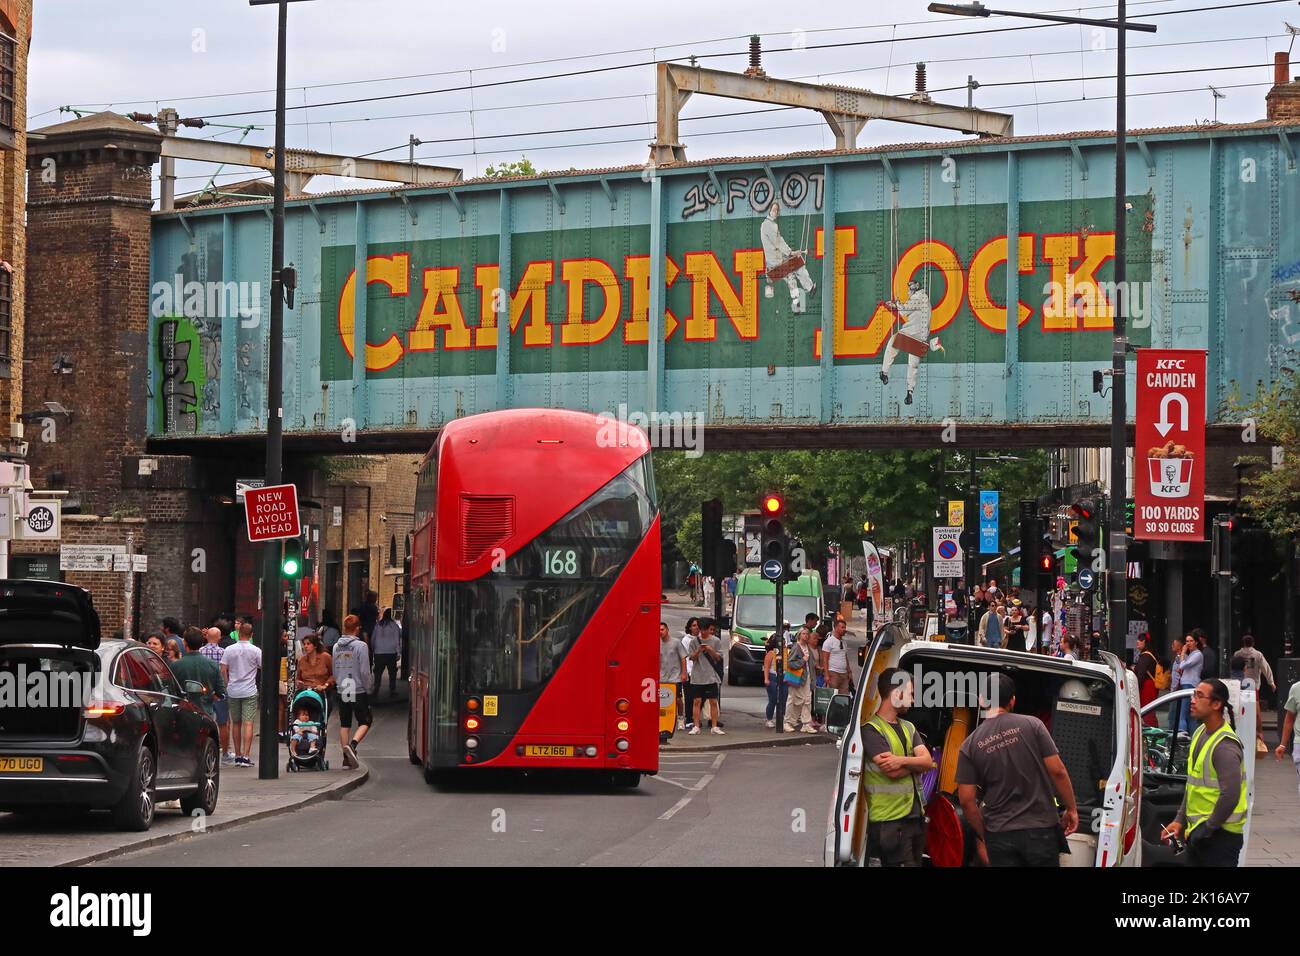 Célèbre pont de chemin de fer Camden Lock, occupé avec les visiteurs, avec le bus rouge London Routemaster n° 168, Camden Town, Londres, Angleterre, NW1 8AF Banque D'Images